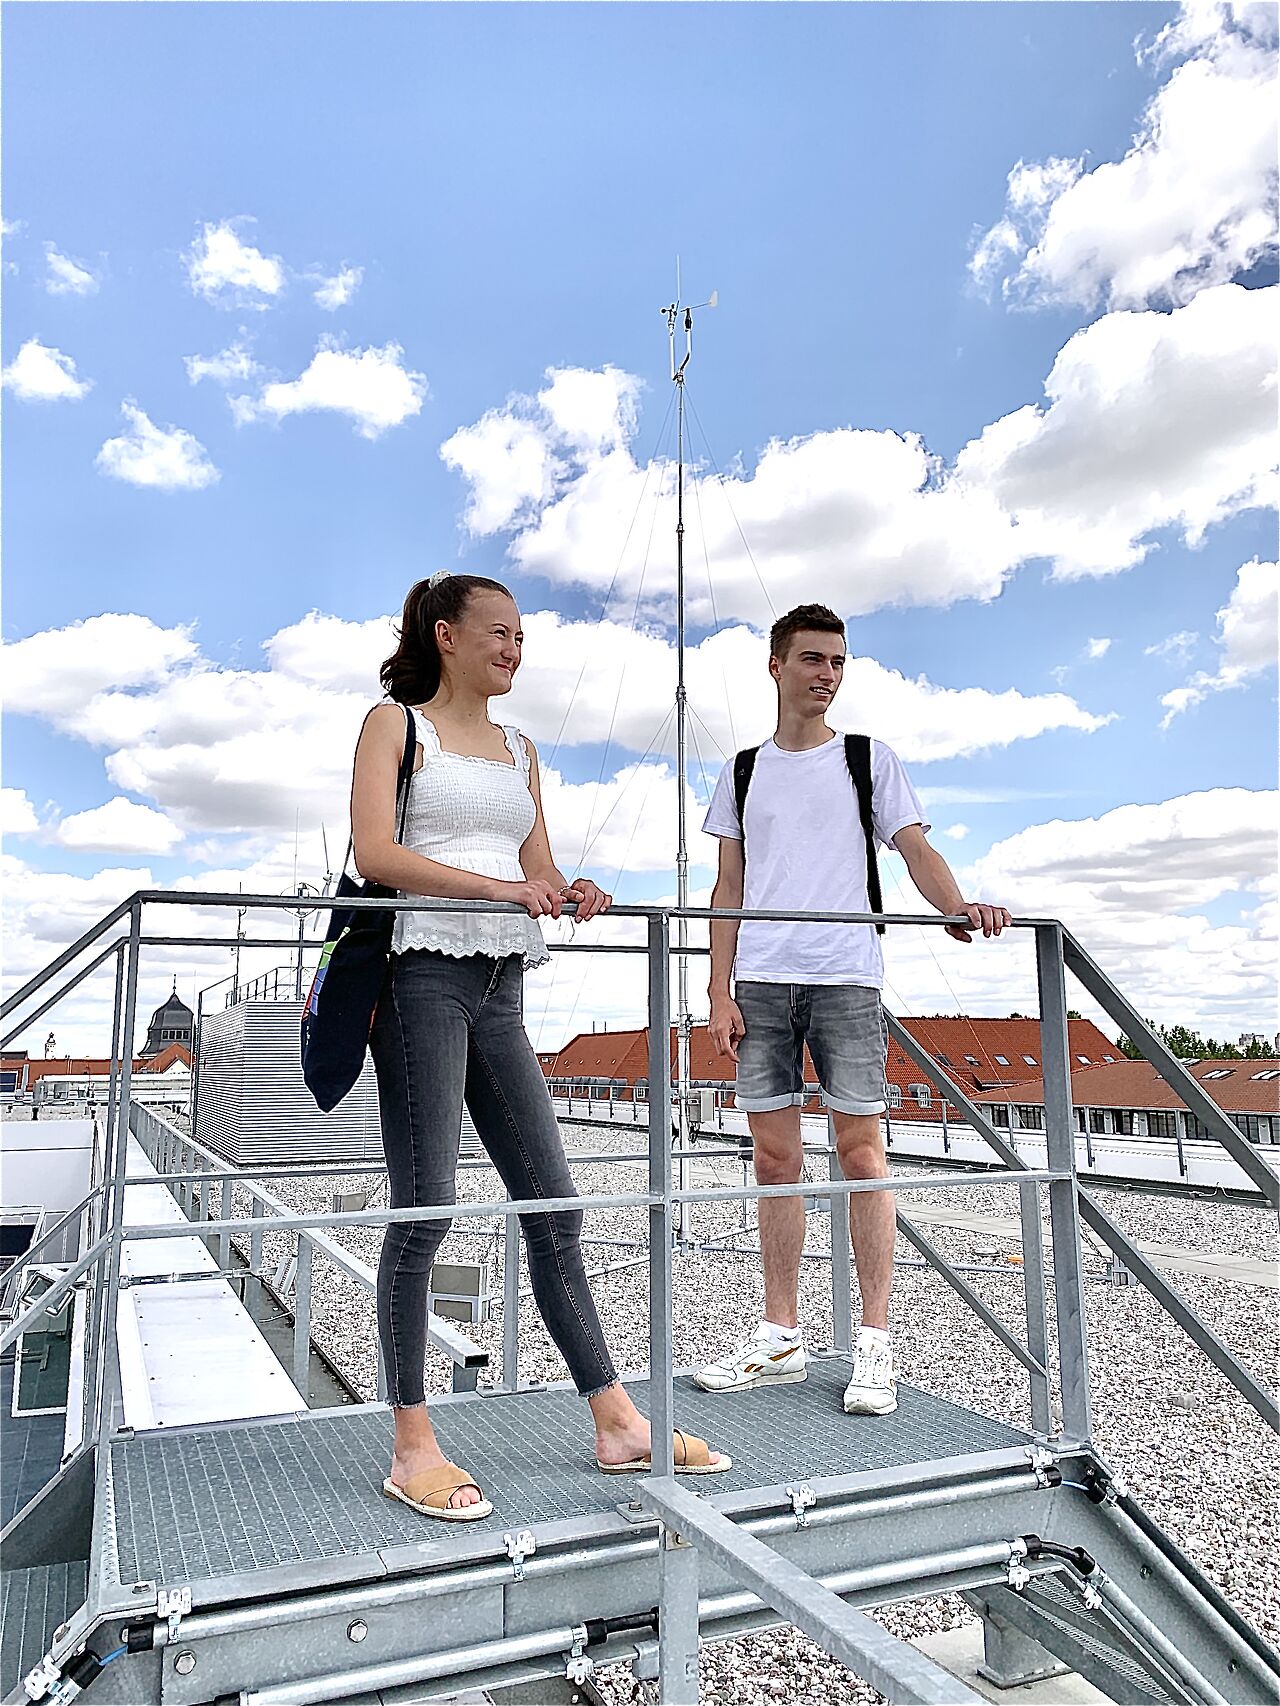 Ein Junge und ein Mädchen (Jugendliche) auf einem Dach.